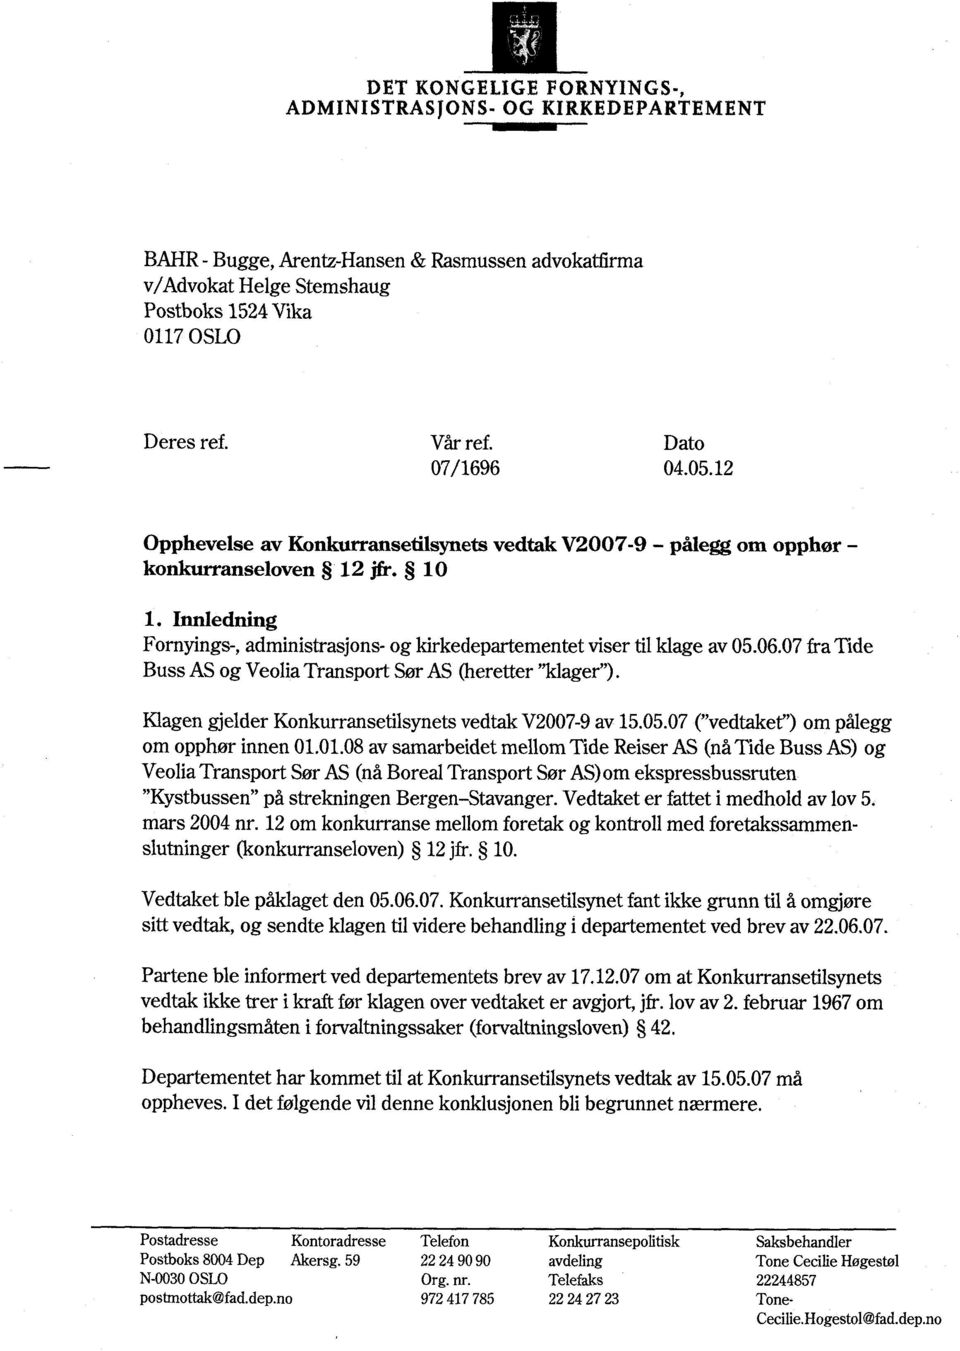 Innledning Fornyings-, administrasjons- og kirkedepartementet viser til klage av 05.06.07 fra Tide Buss AS og Veolia Transport Sør AS (heretter "klager").